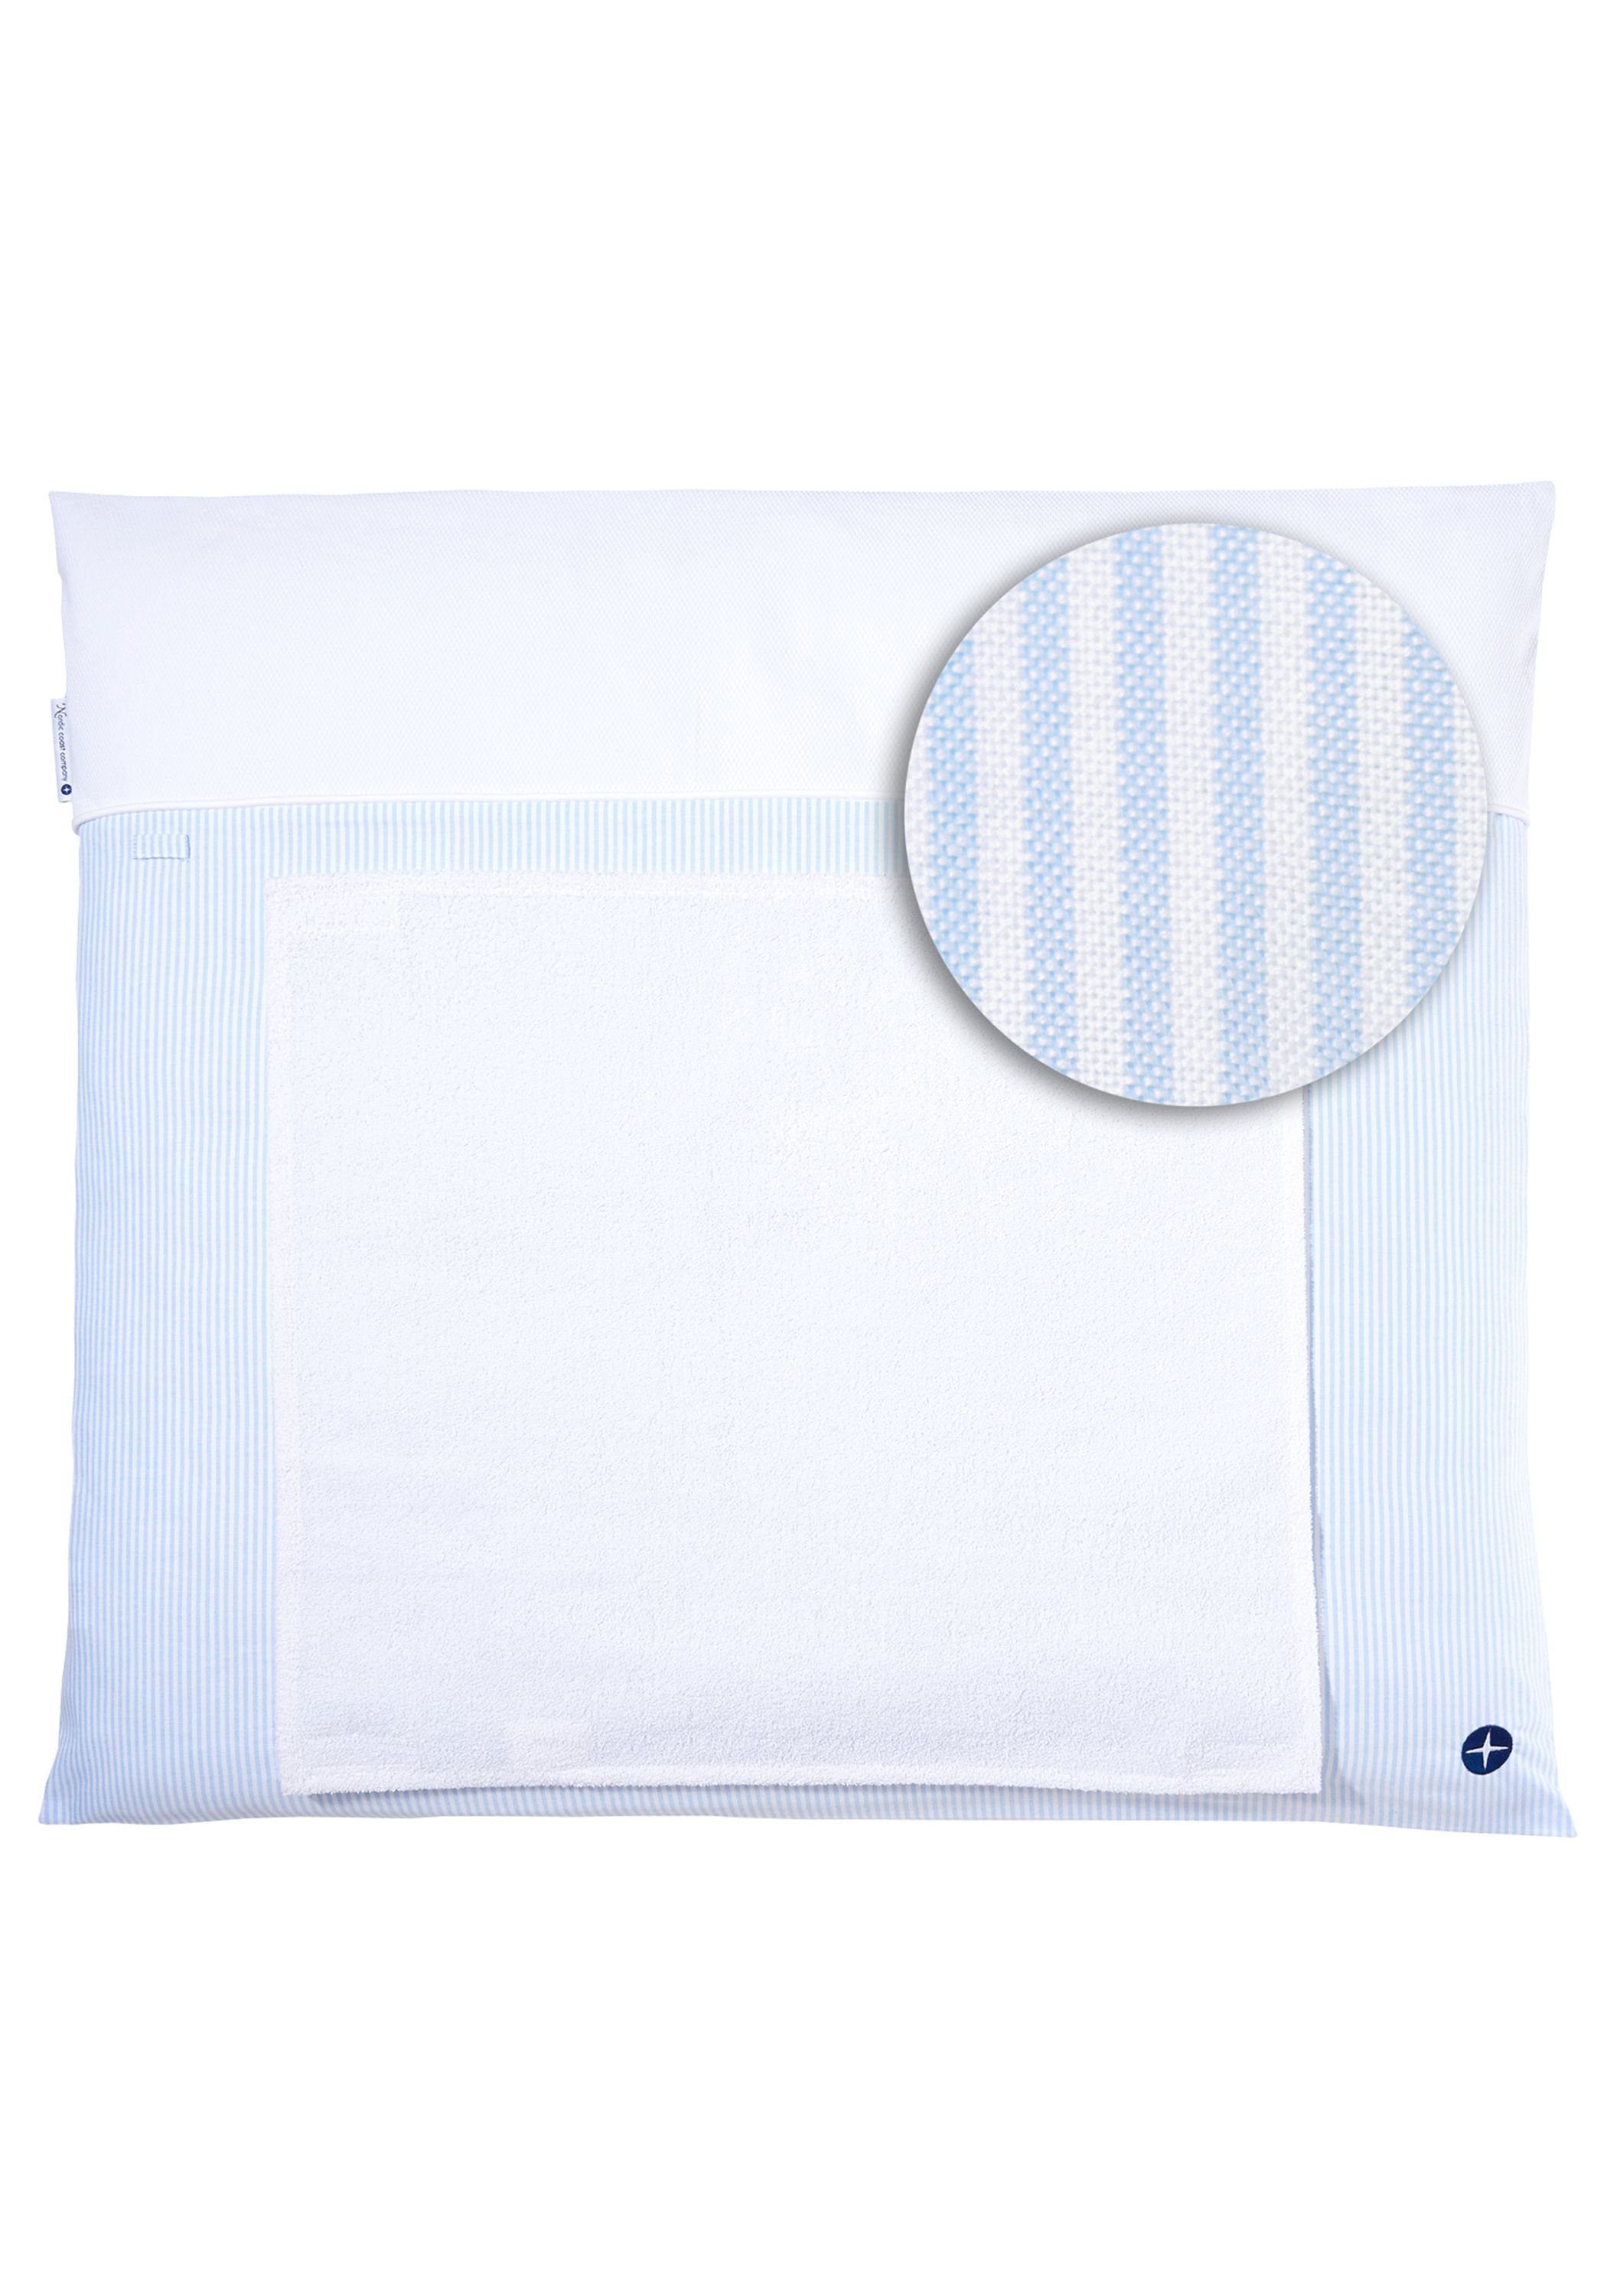 Nordic Coast Company Wickelauflage, Wickelauflage Blau Weiß gestreift [70x80 cm] 100% zertifizierte Baumwolle Wechselbares Handtuch Wickelunterlage Baby Wickeltischauflage Blau-Weiß gestreift